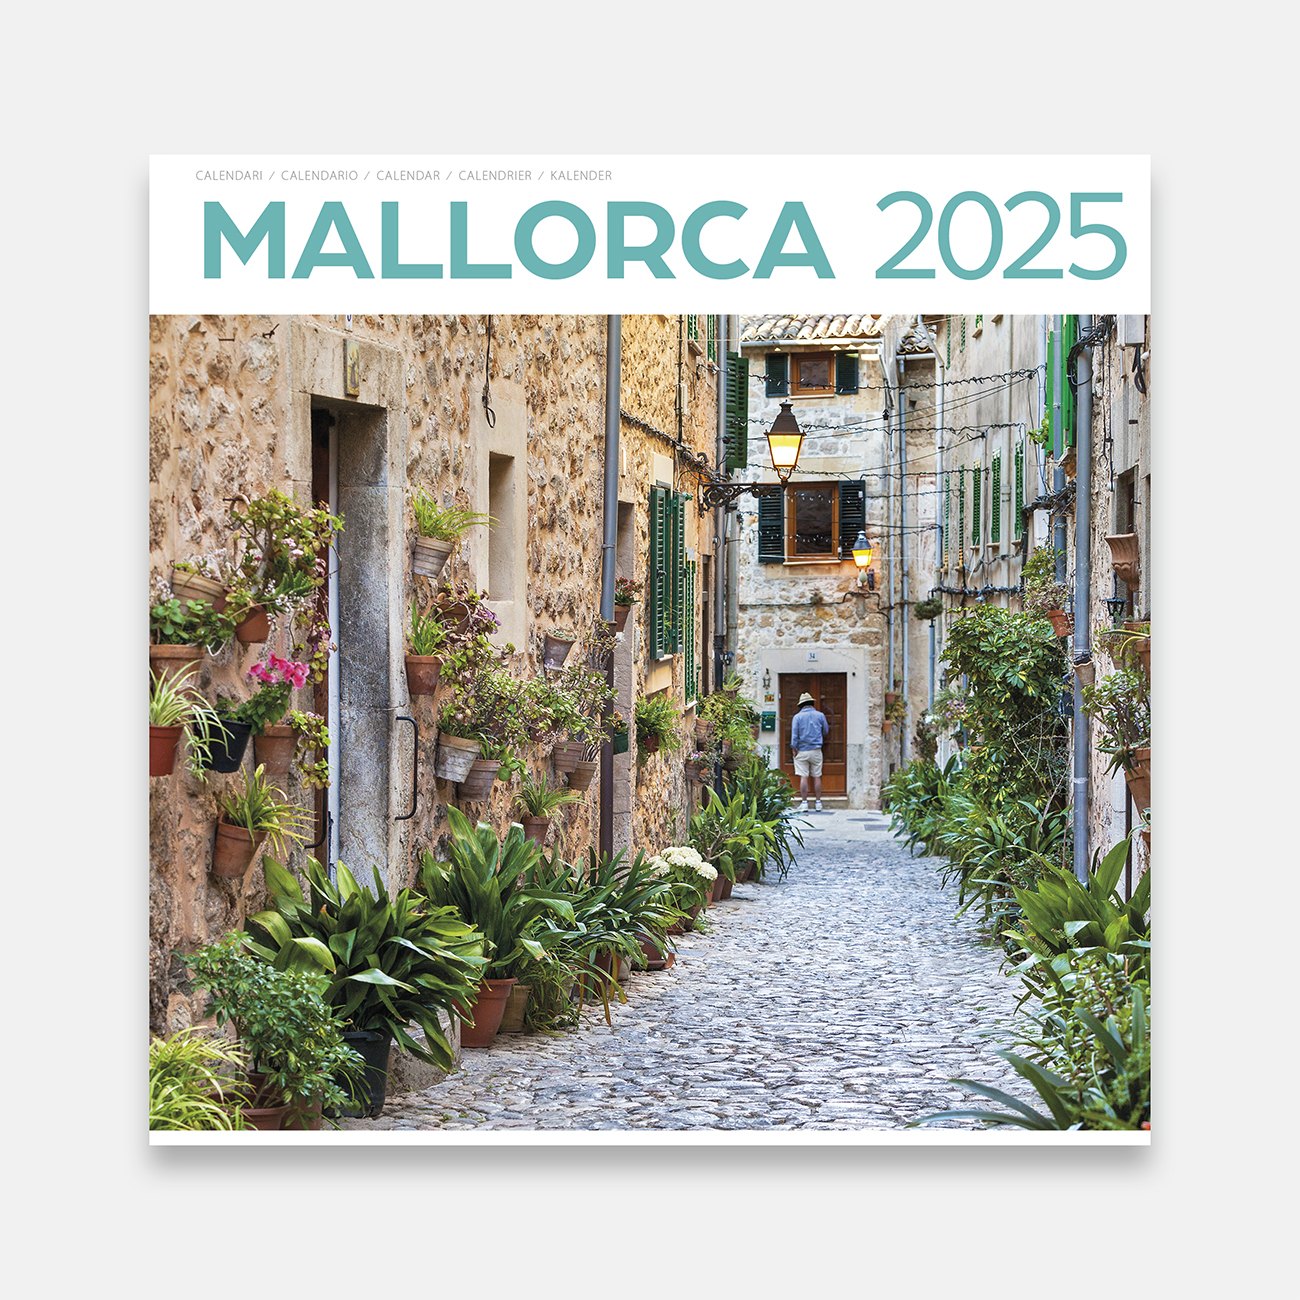 Calendar 2025 Mallorca 25ma2 calendario pared 2025 mallorca